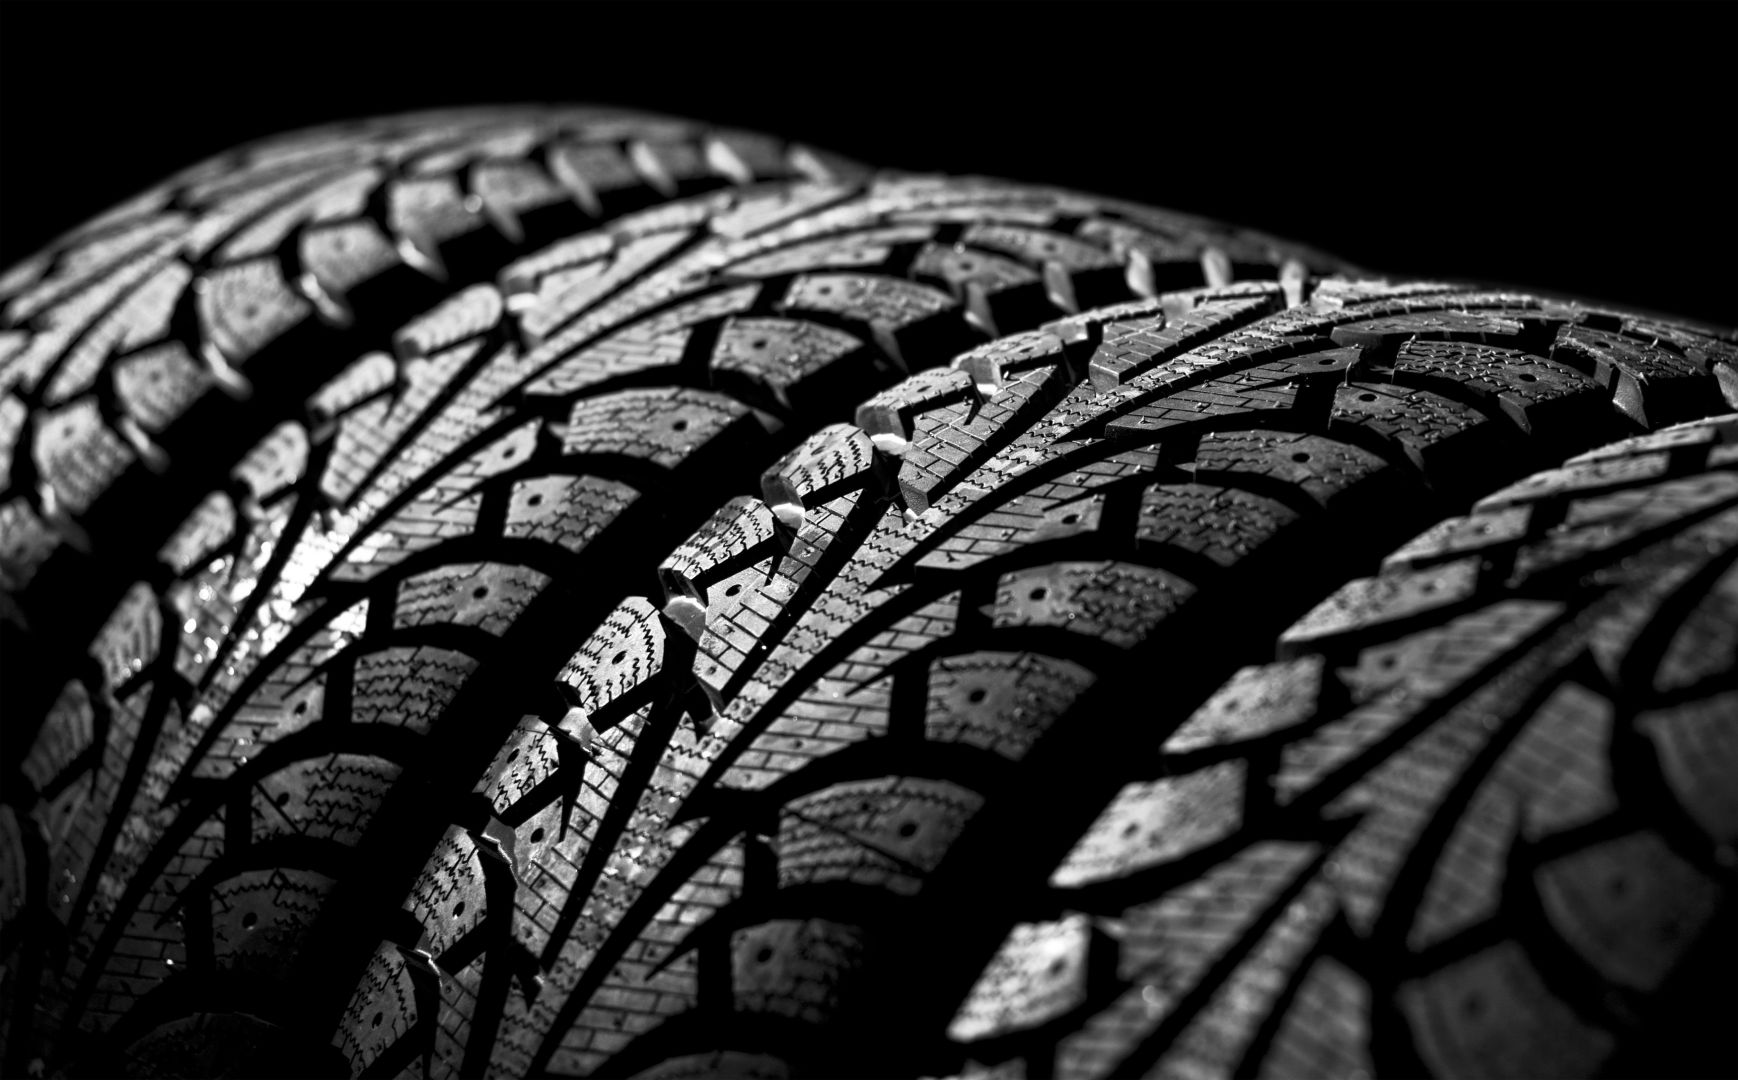 Poptávka na dodavatele pneumatik a alu disků na osobní automobily (Prodej pneumatik) - Ústí nad Labem